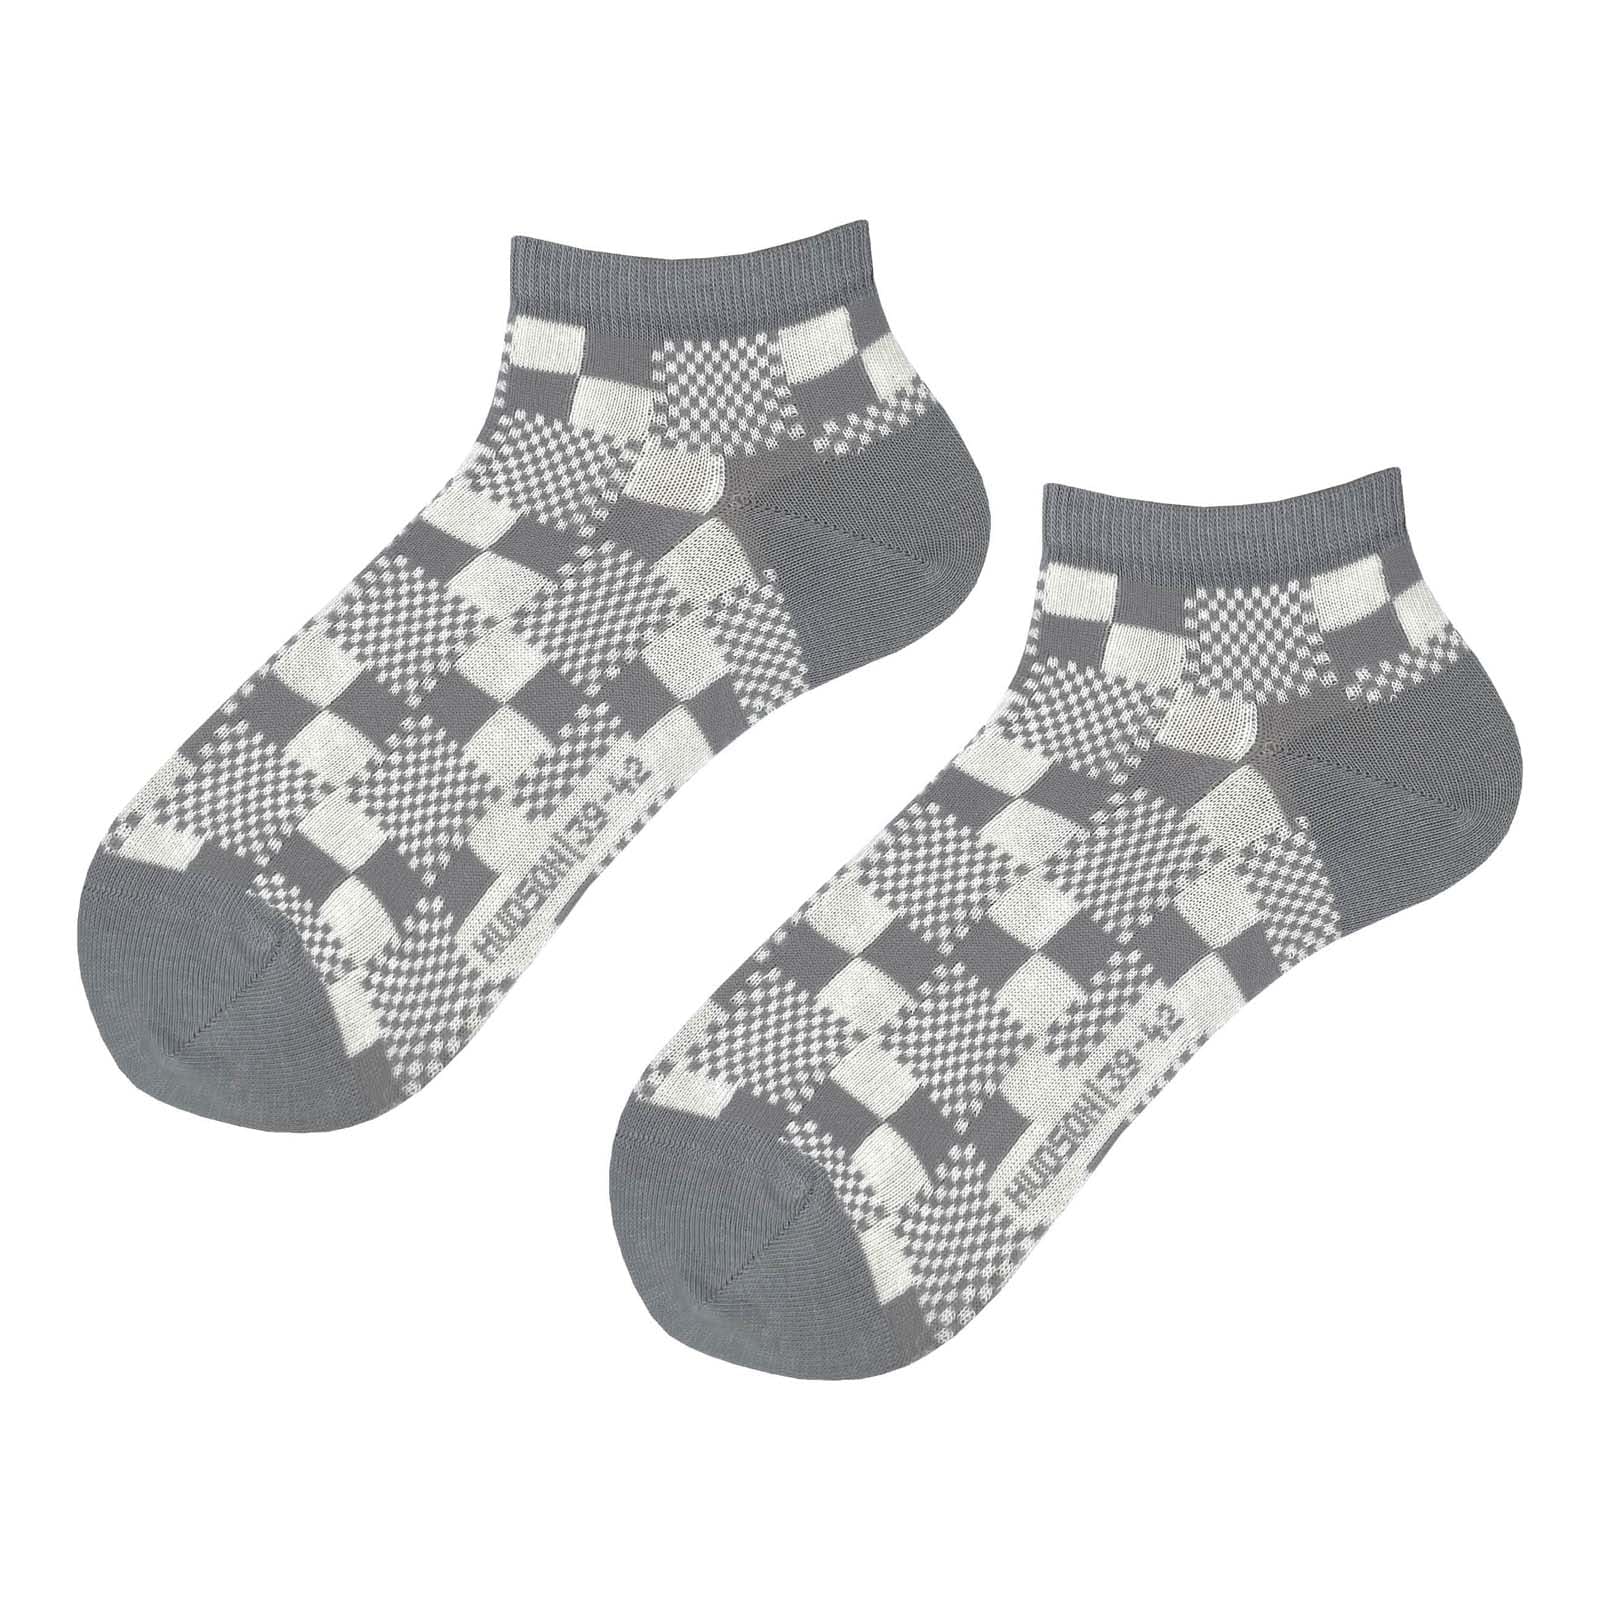 HUDSON Herren TRICKY -  39/42 - Herren Sneaker Socken mit auffälligem Schachbrett-Muster - Silber (Grau)